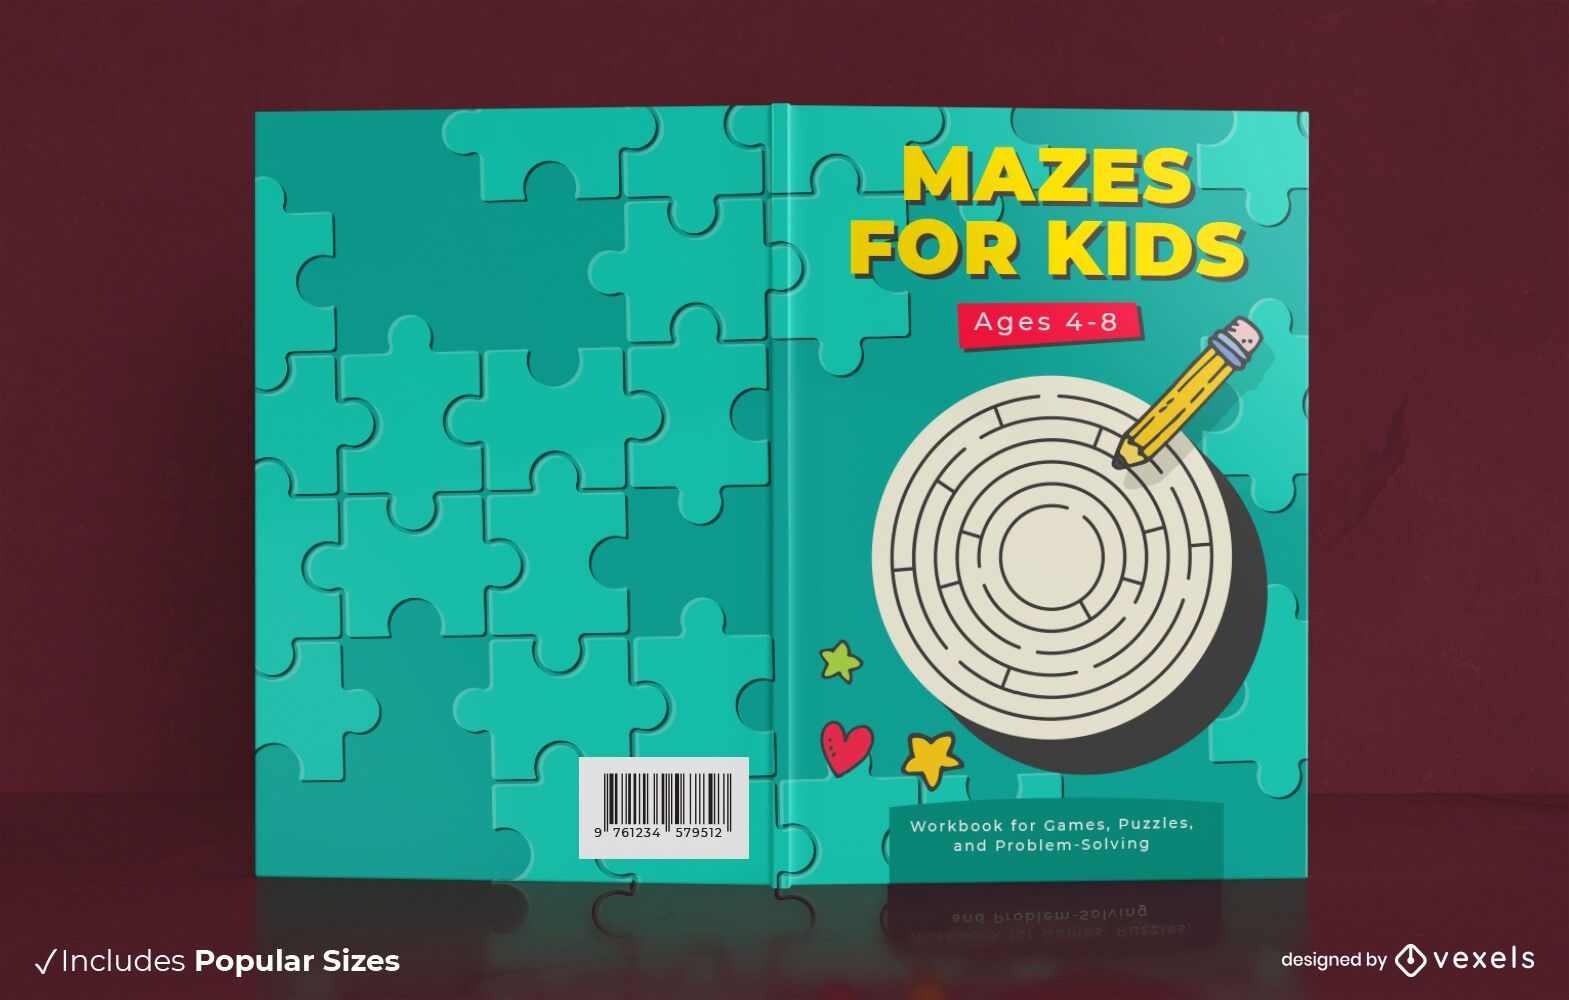 Maze activity book cover design